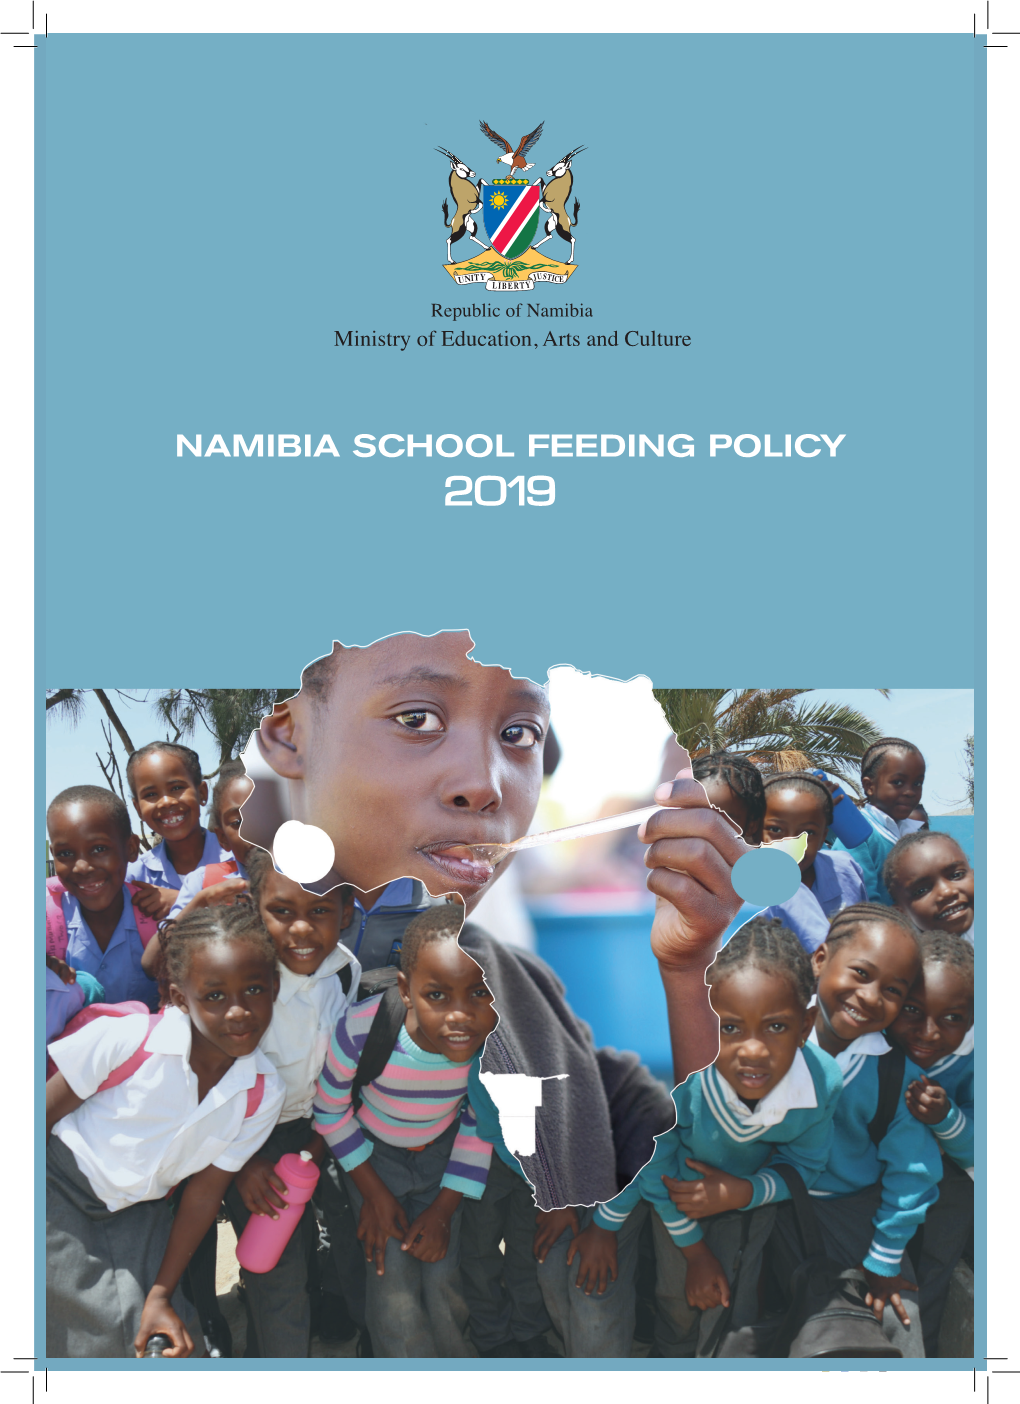 Namibia School Feeding Policy 2019